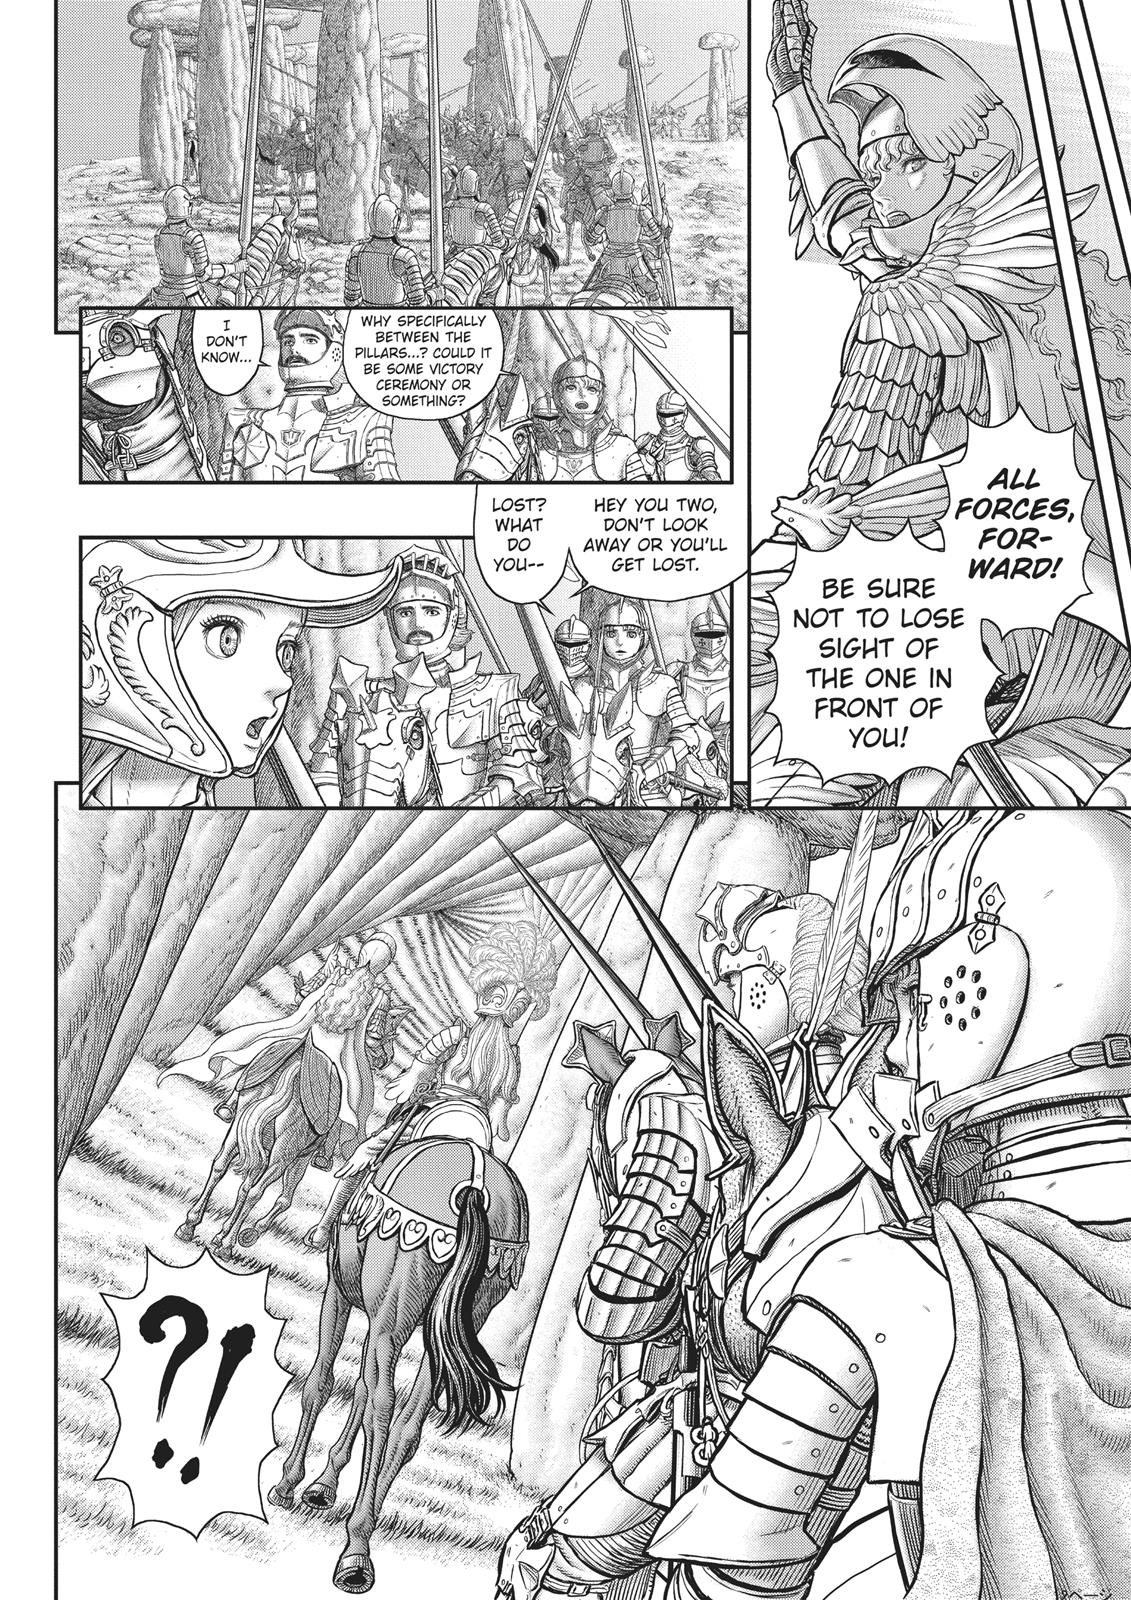 Berserk Manga Chapter 357 image 10